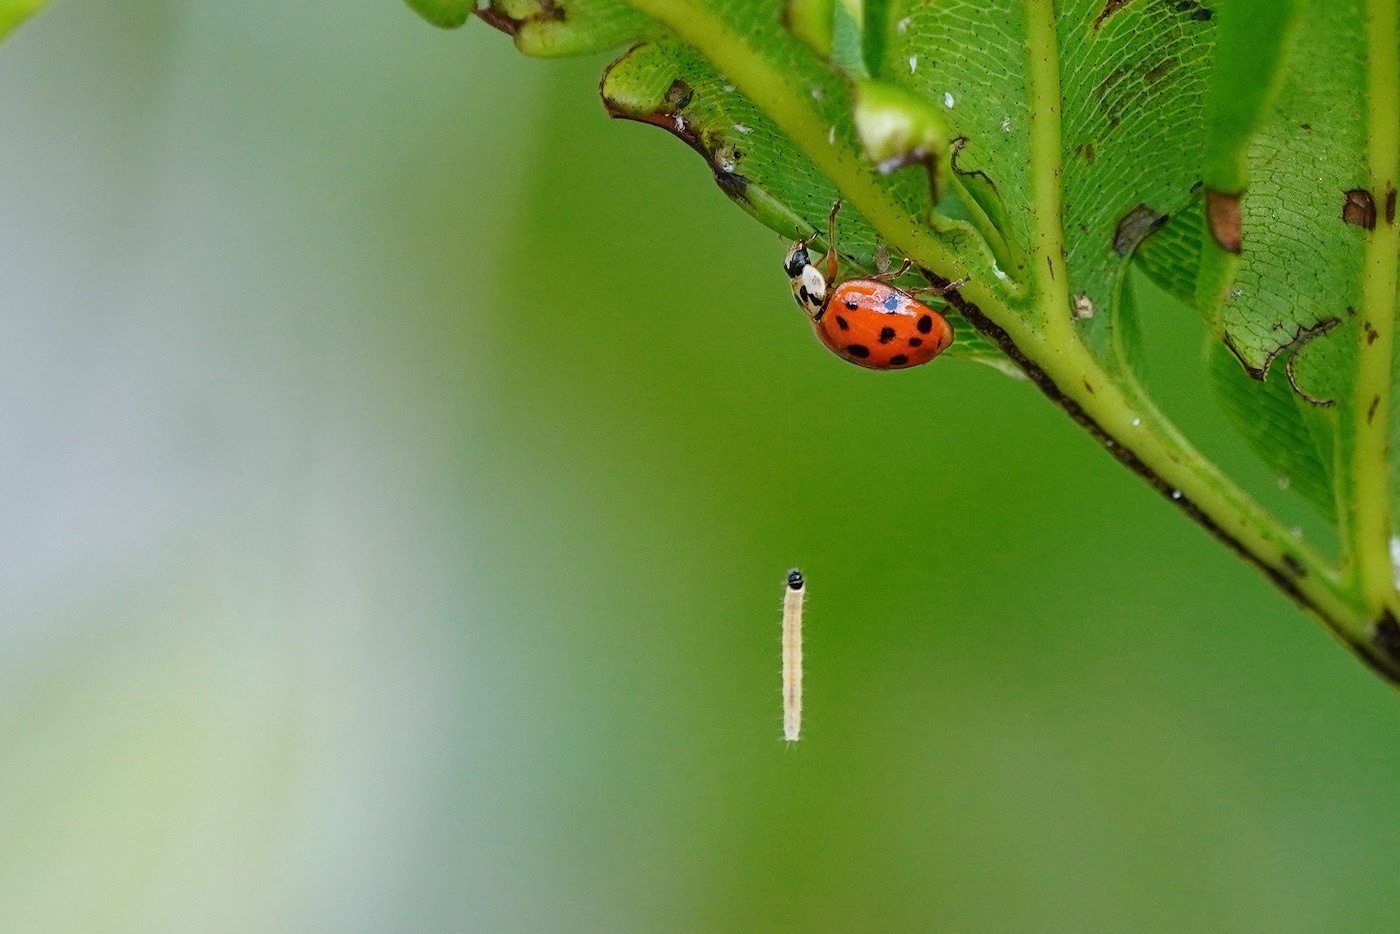 Ladybug and caterpillar